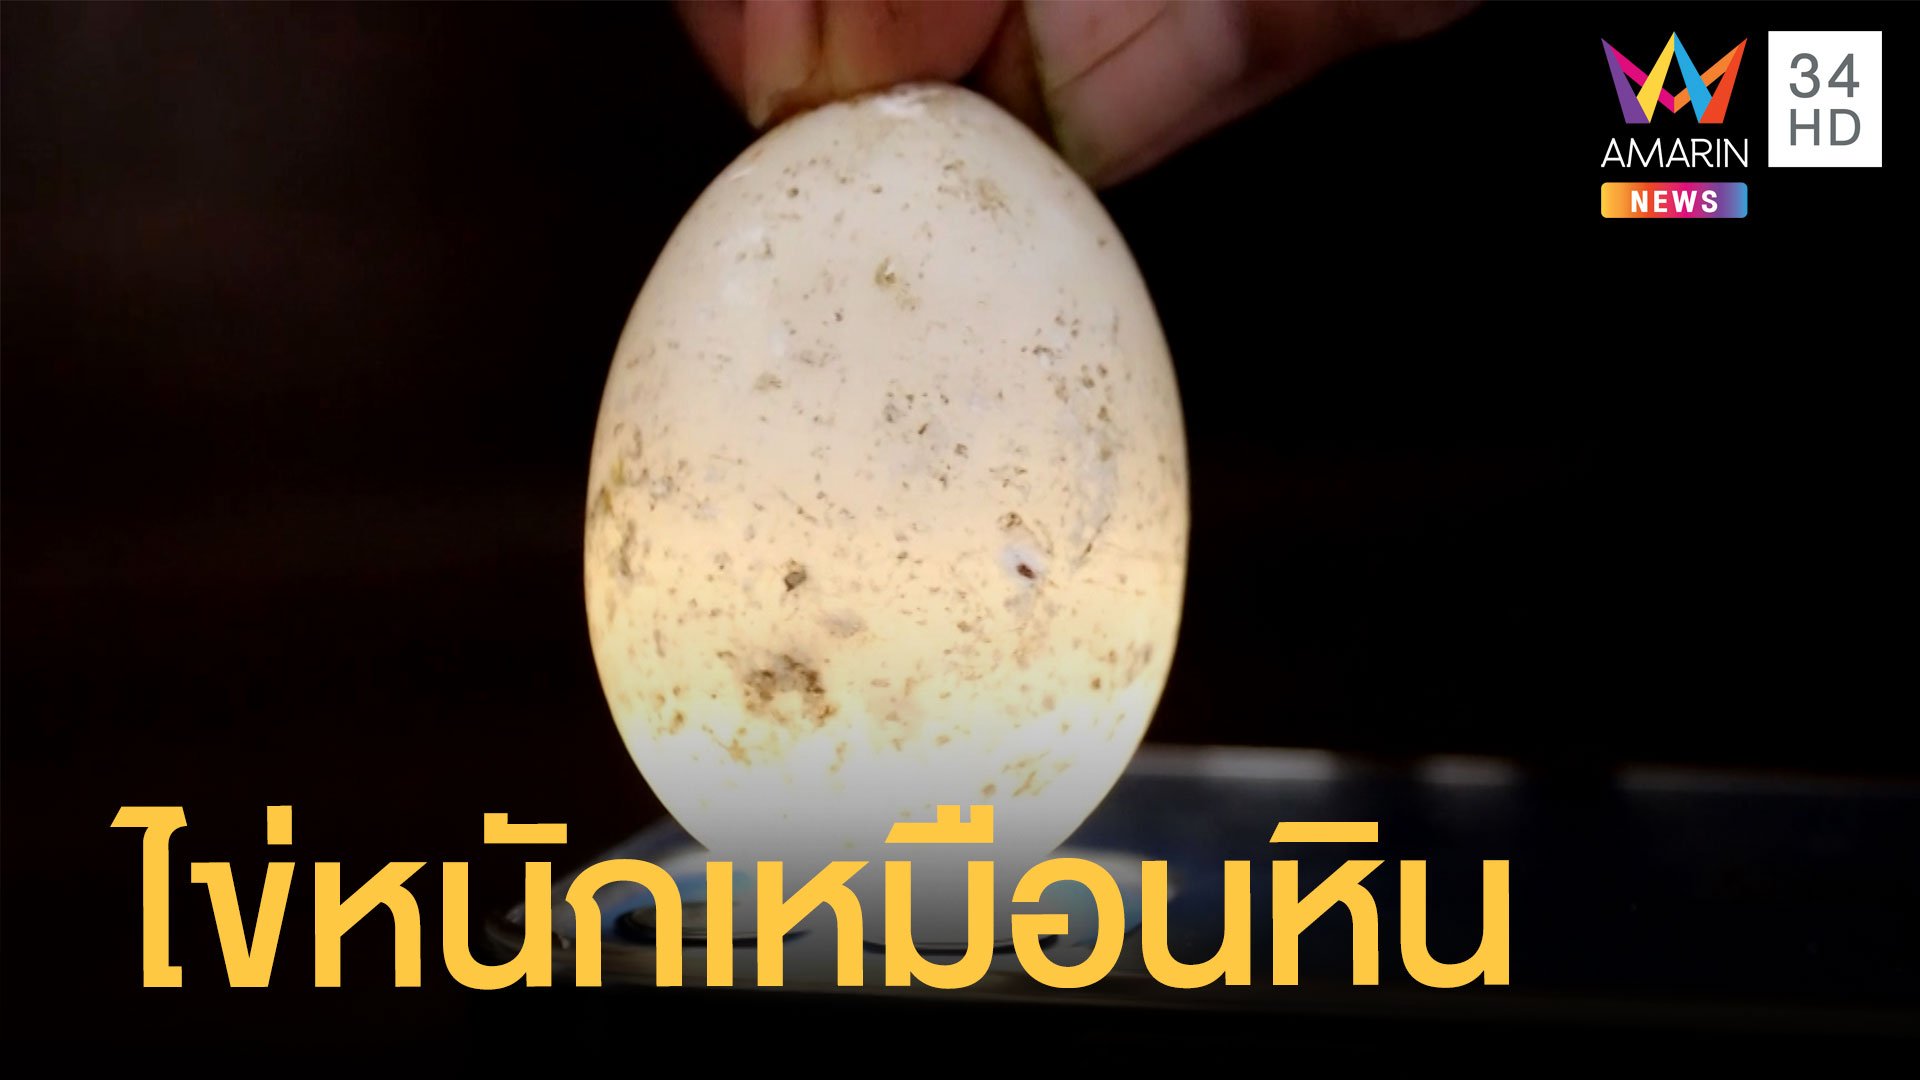 ฮือฮาไข่ประหลาด หนักเหมือนหิน แต่โปร่งแสง | ข่าวอรุณอมรินทร์ | 15 ธ.ค. 64 | AMARIN TVHD34